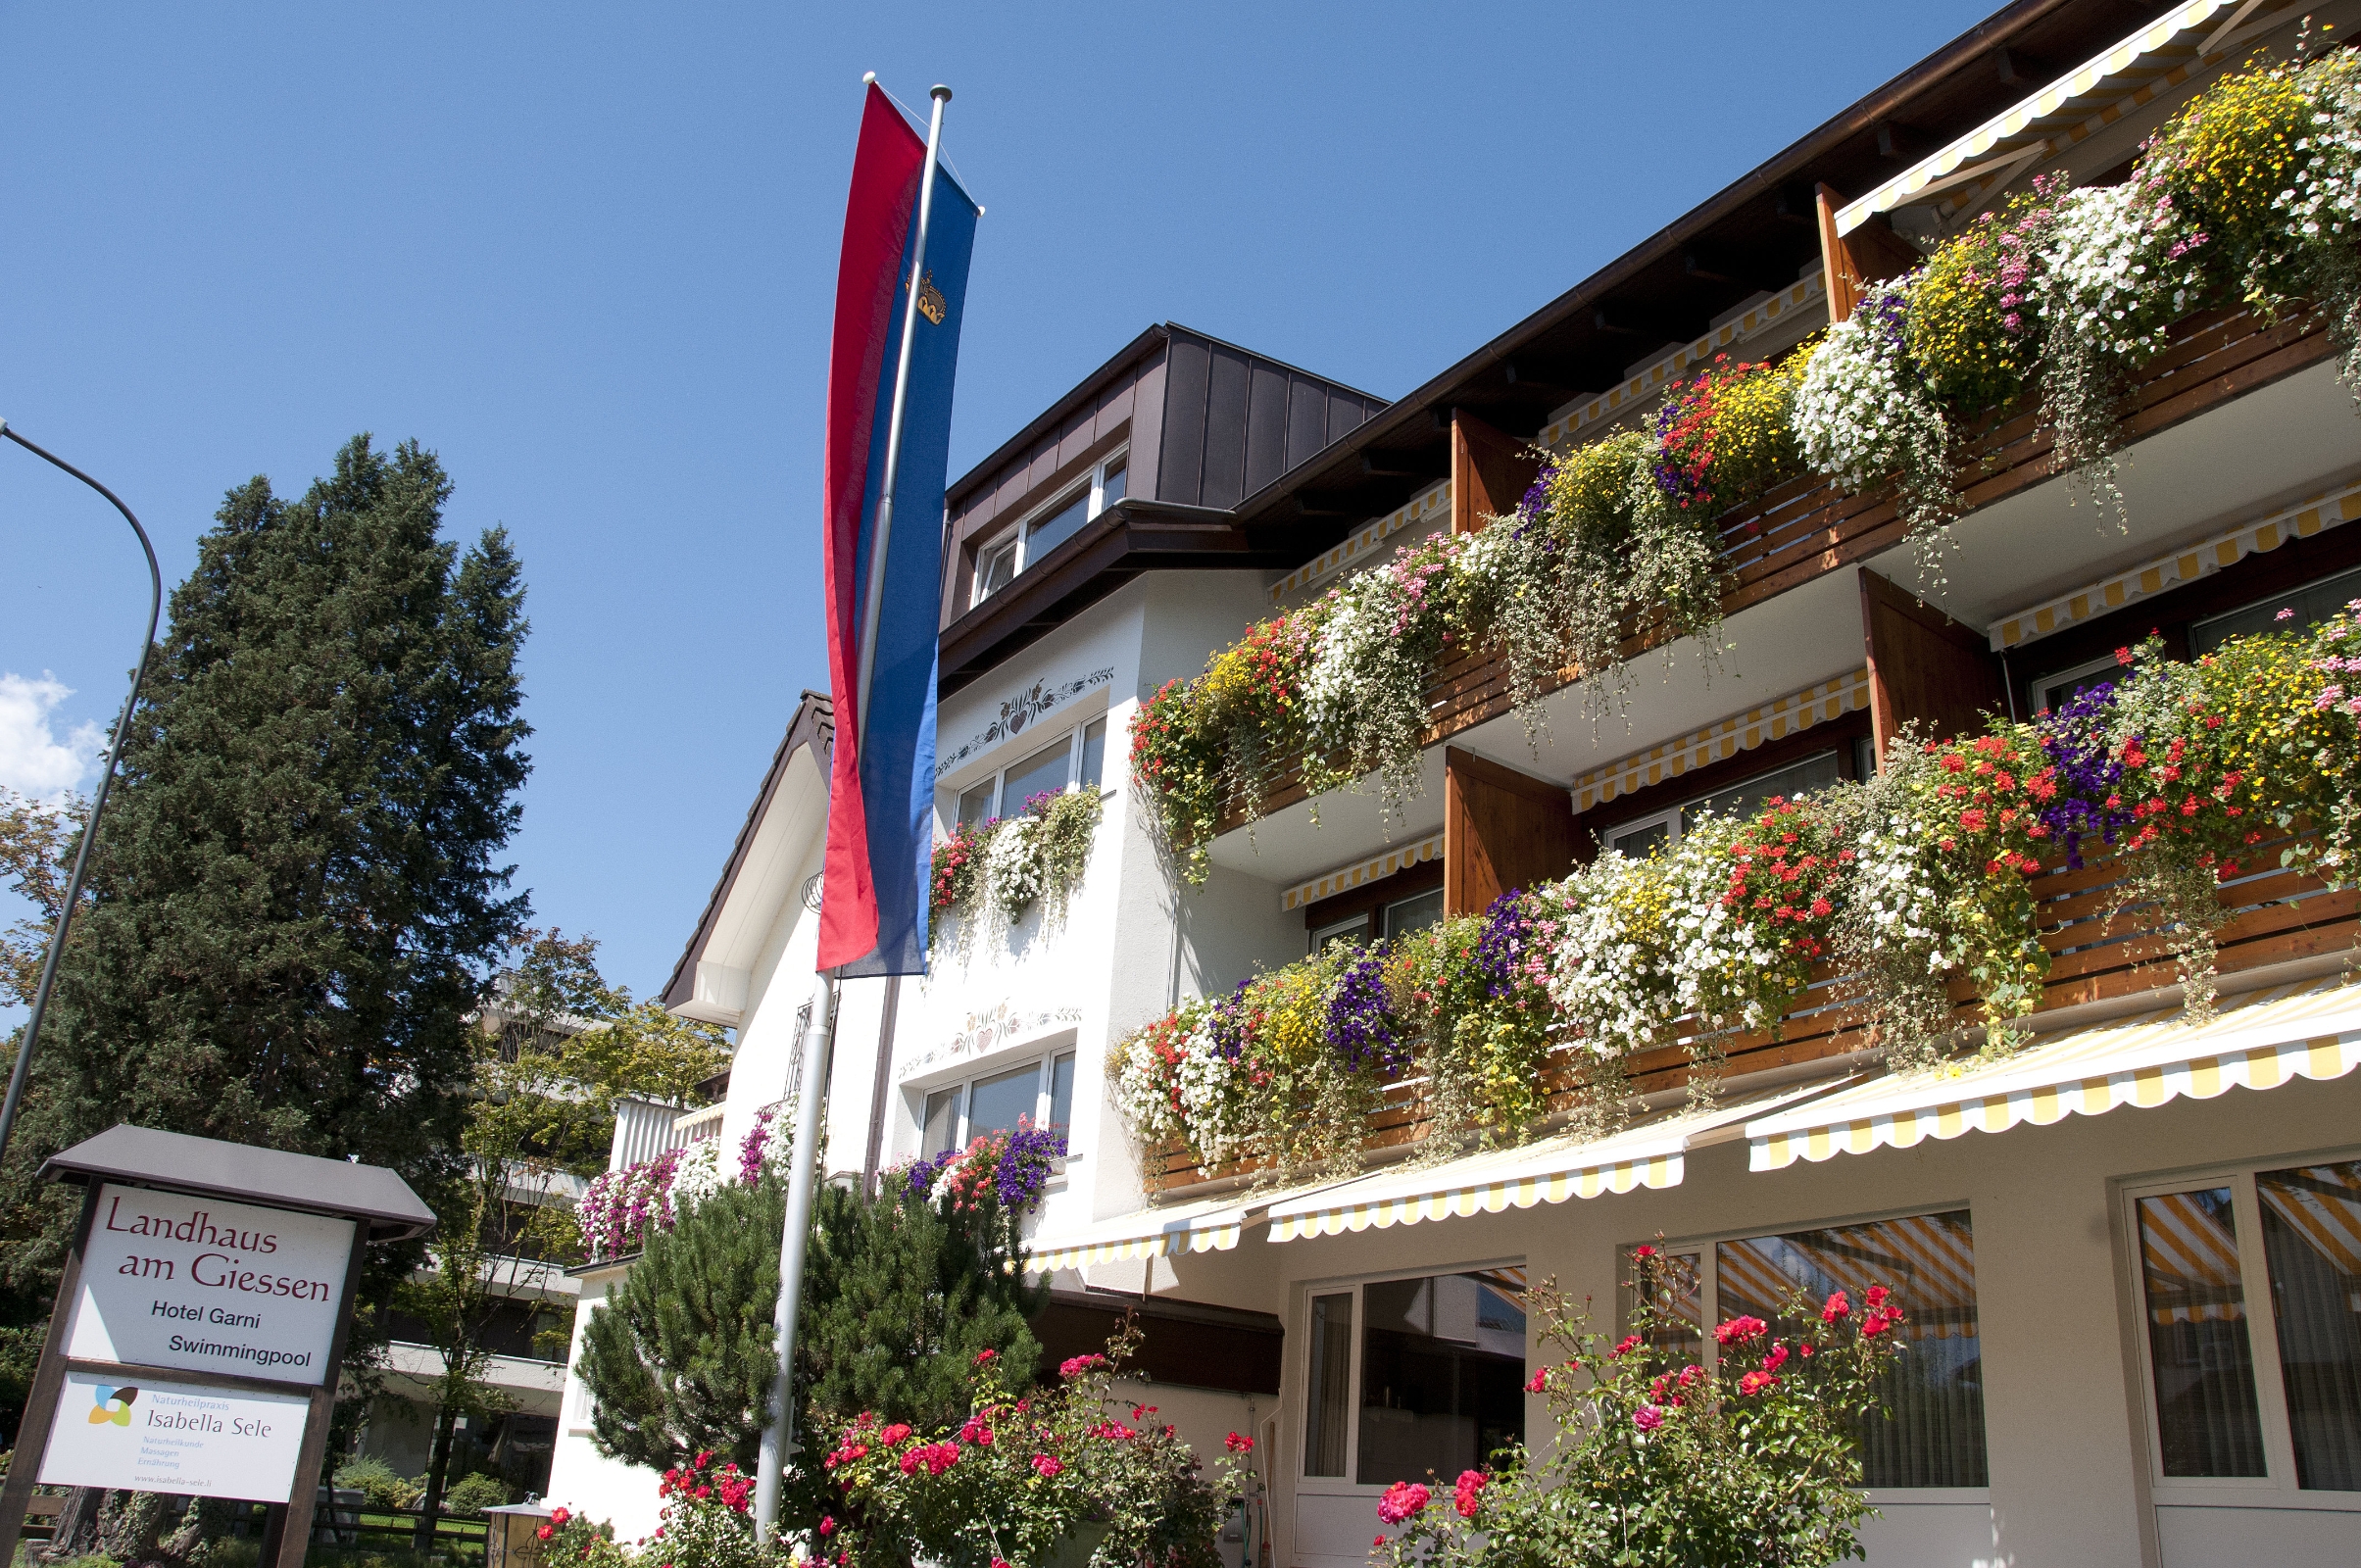 Hotel Landhaus am Giessen (Vaduz)